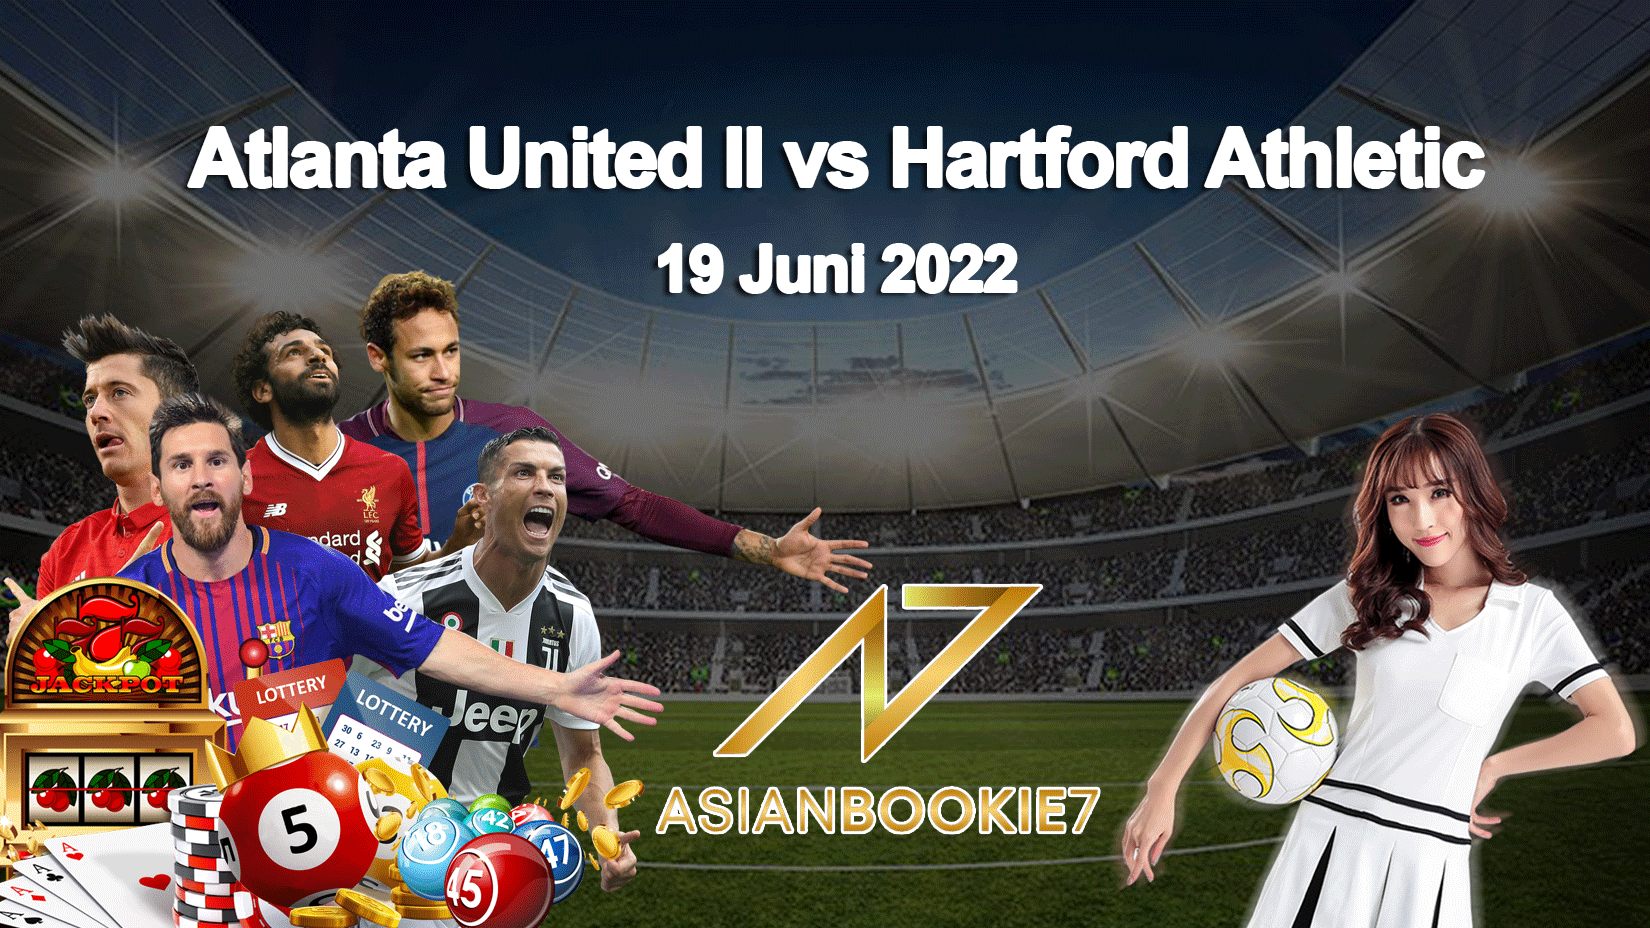 Prediksi Atlanta United II vs Hartford Athletic 19 Juni 2022